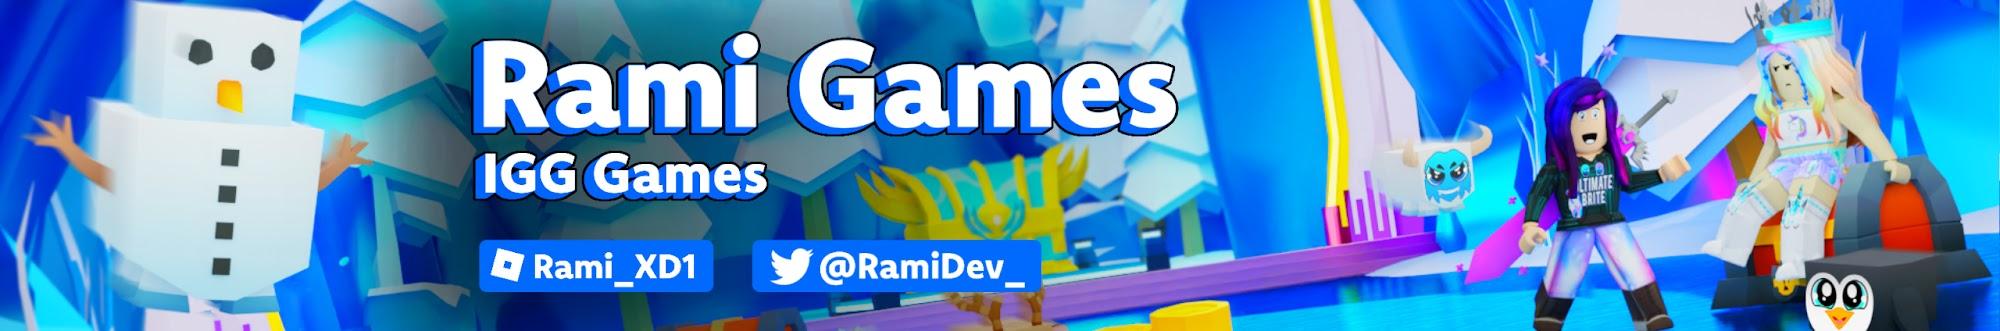 Rami Games